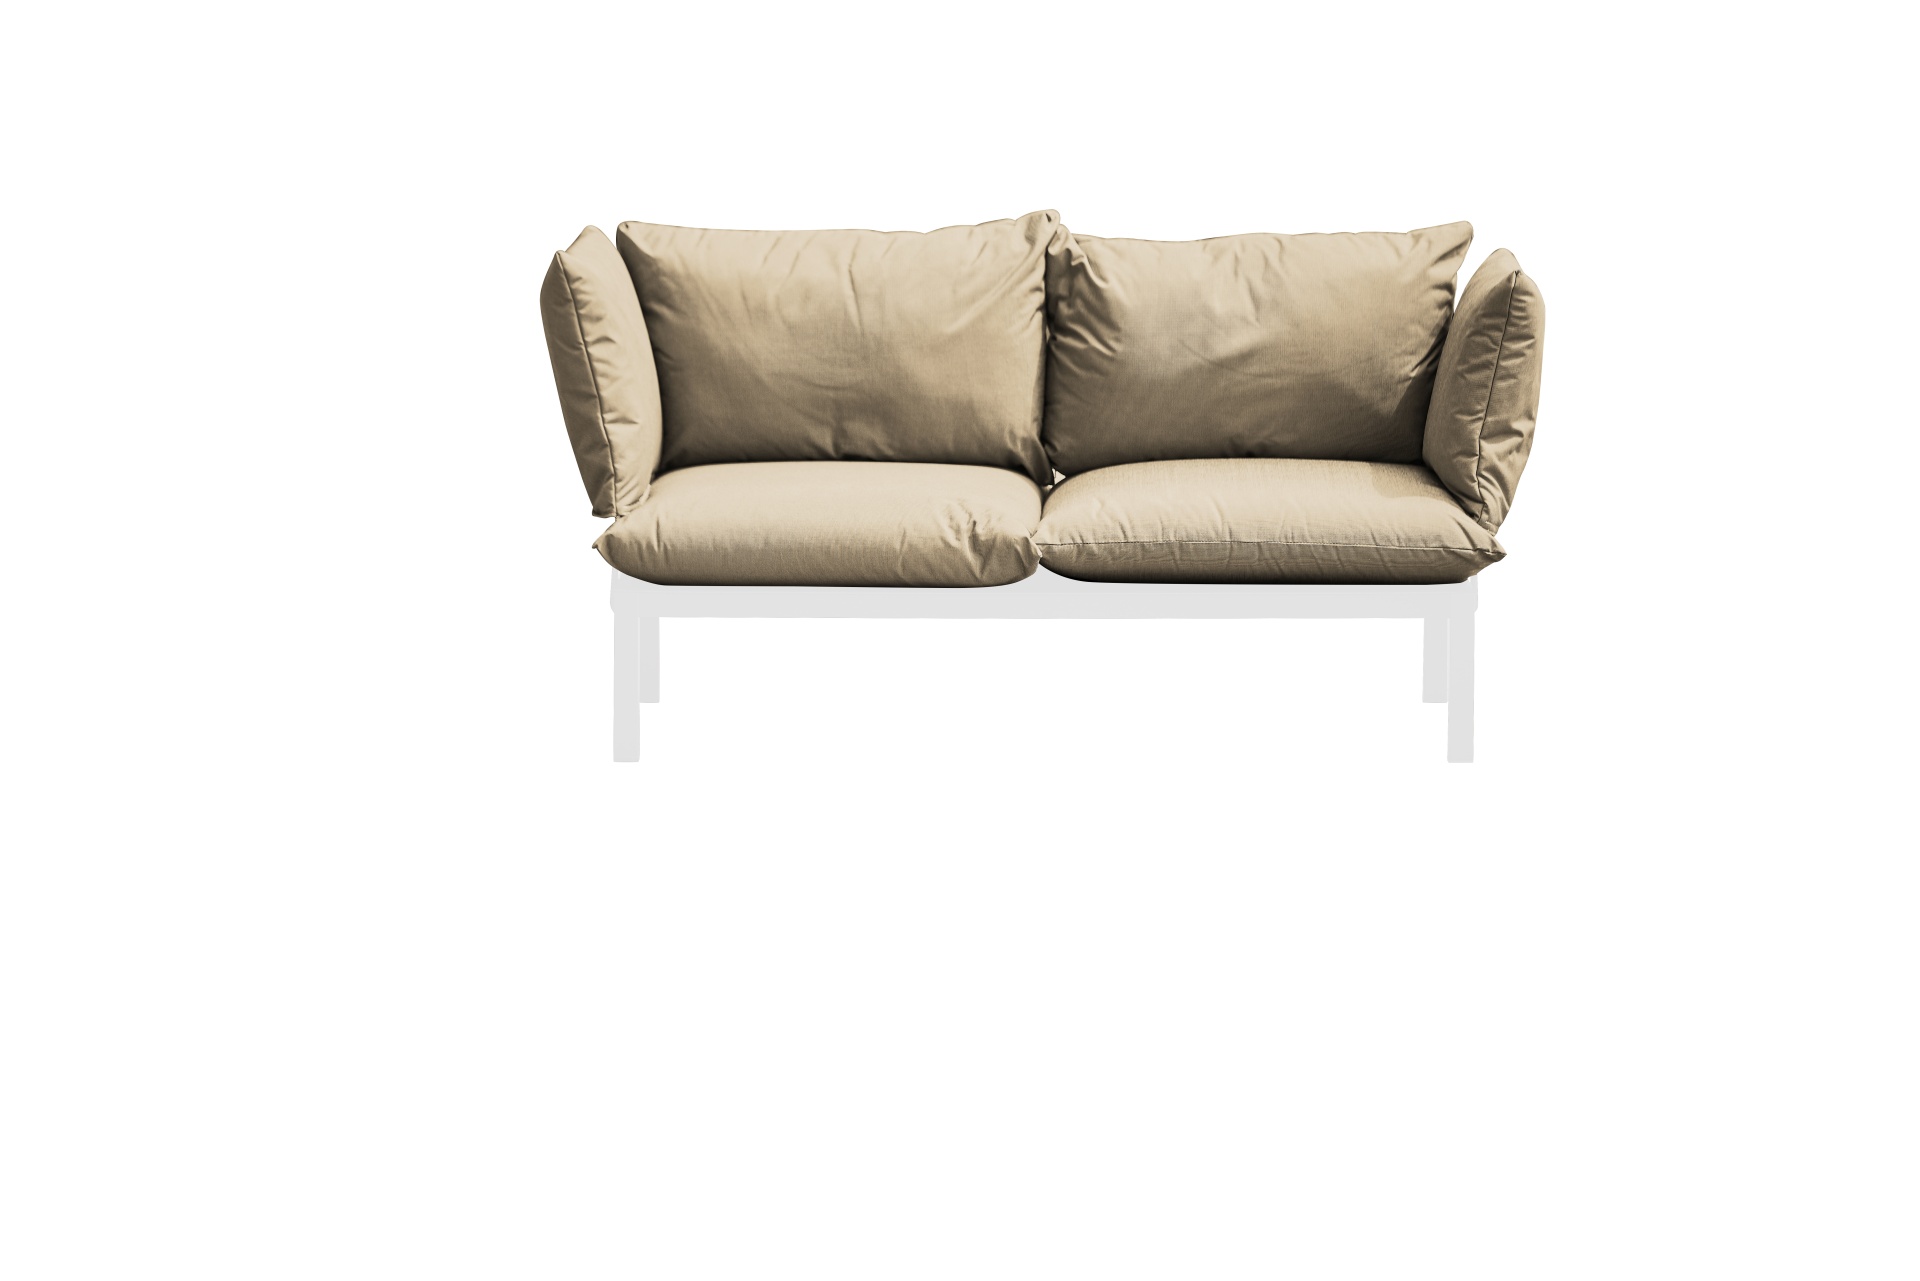 Das Gartensofa Domino in der Ausführung 2-Sitzer hat ein modernes Design. Hergestellt wurde dieses von der Marke Jan Kurtz. Das Sofa ist in verschieden Farbkombinationen erhältlich. Dieses hat die Gestell-Farbe Weiß und die Bezug-Farbe Taupe.